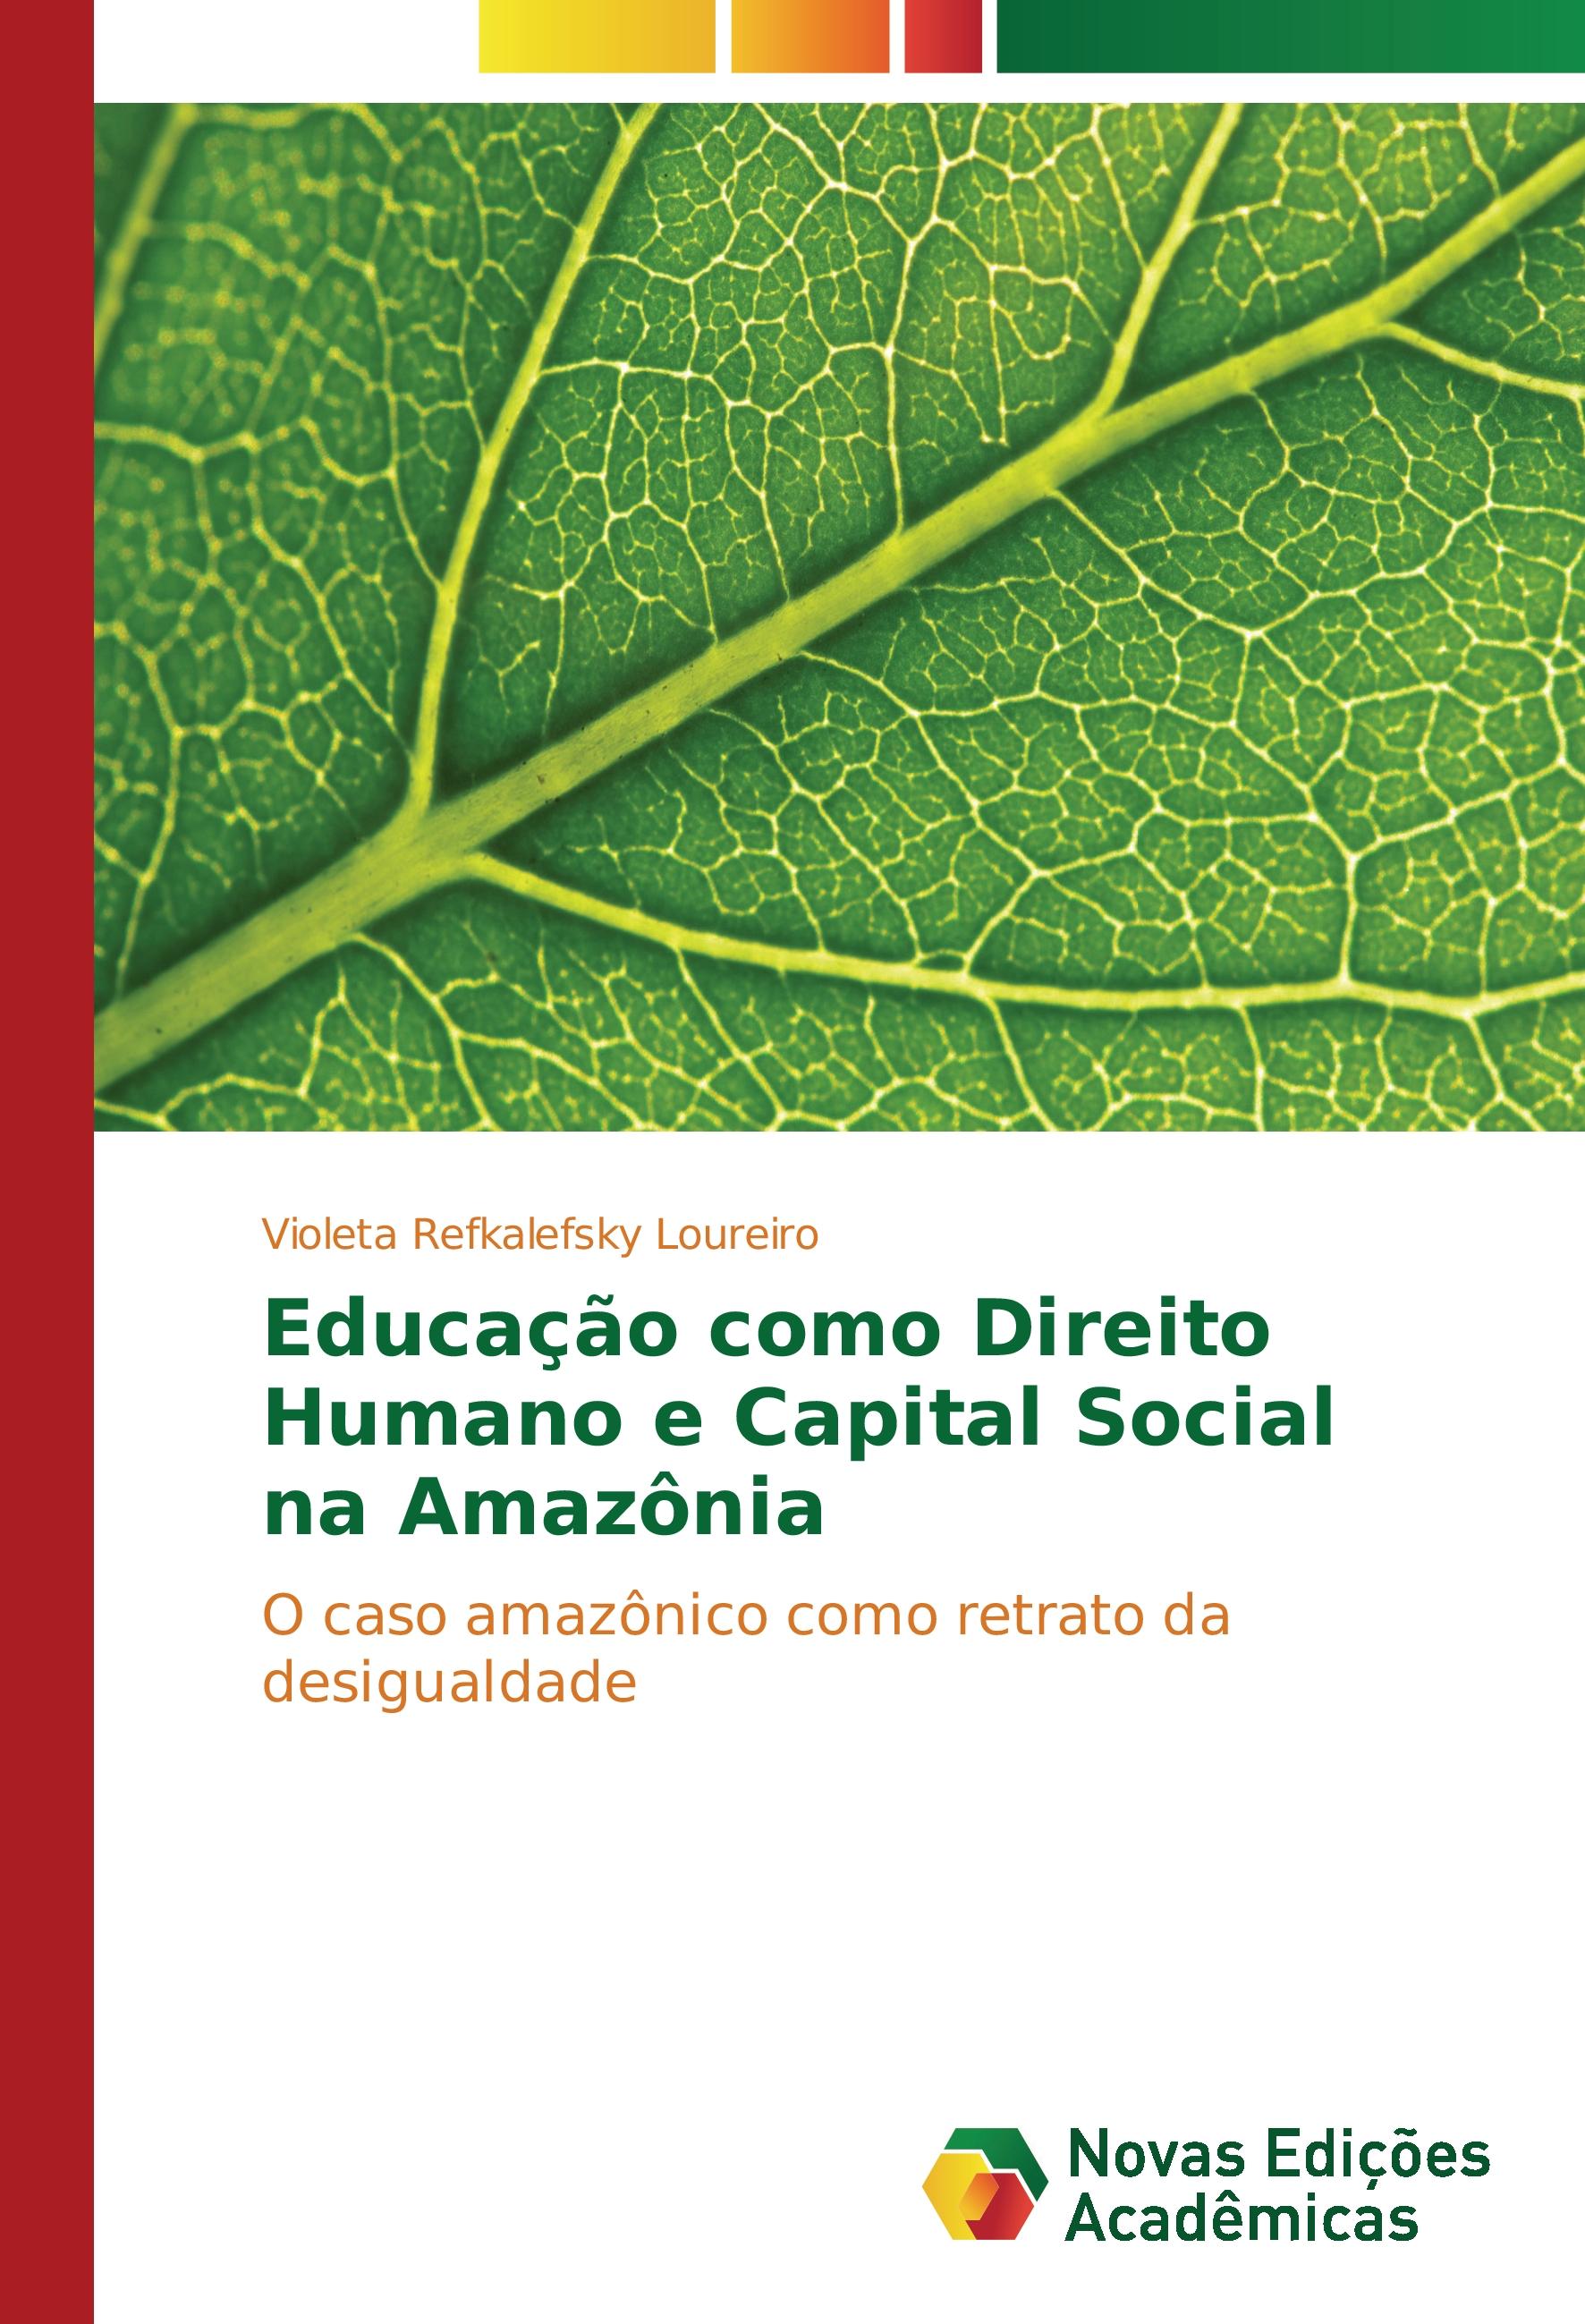 Educação como Direito Humano e Capital Social na Amazônia - Violeta Refkalefsky Loureiro